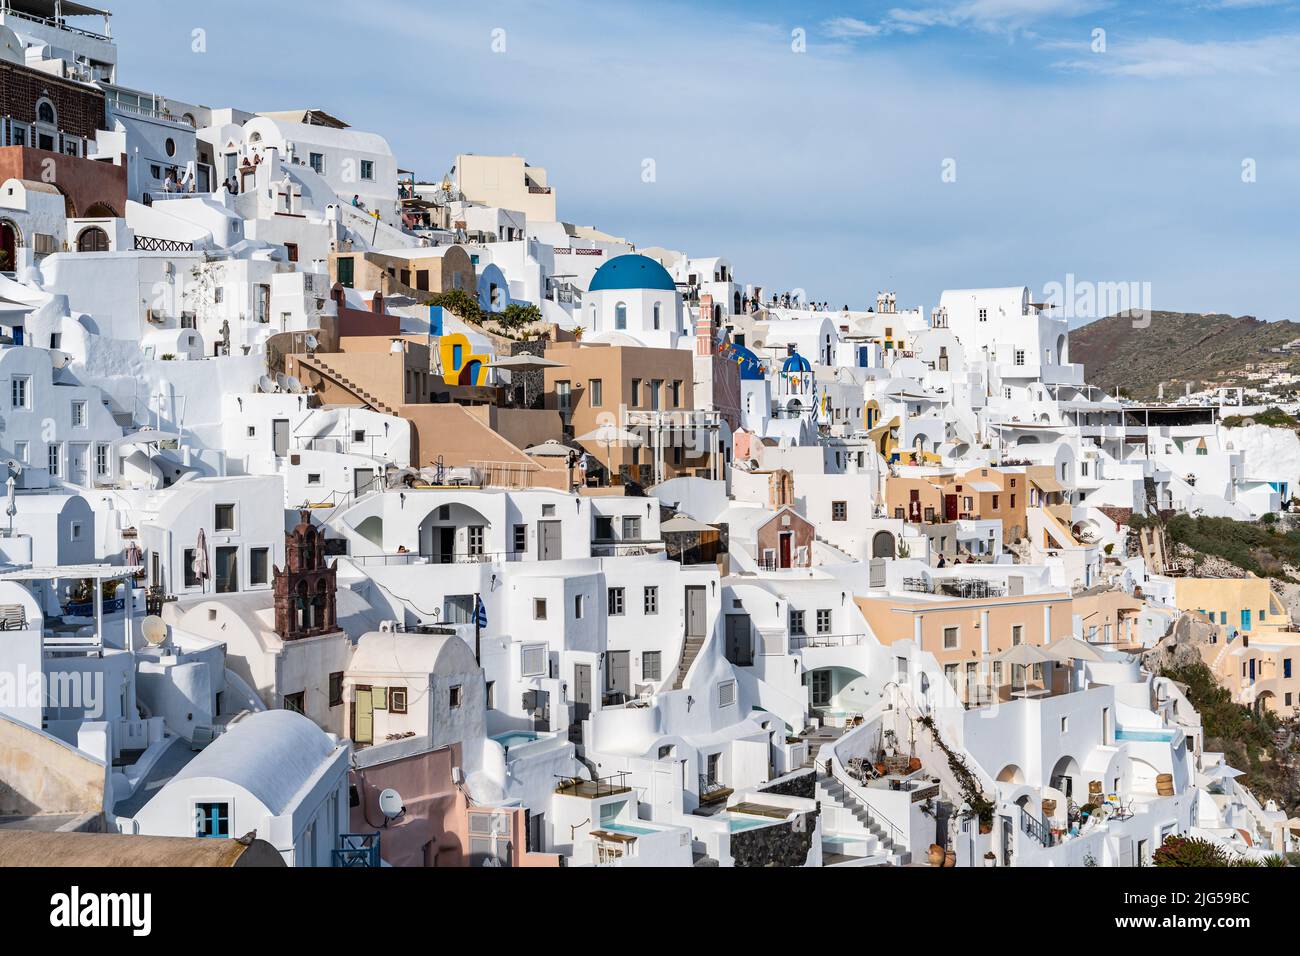 Vista panoramica della città di Oia a Santorini con case dipinte di bianco e una piccola chiesa con cupole blu, Grecia Foto Stock